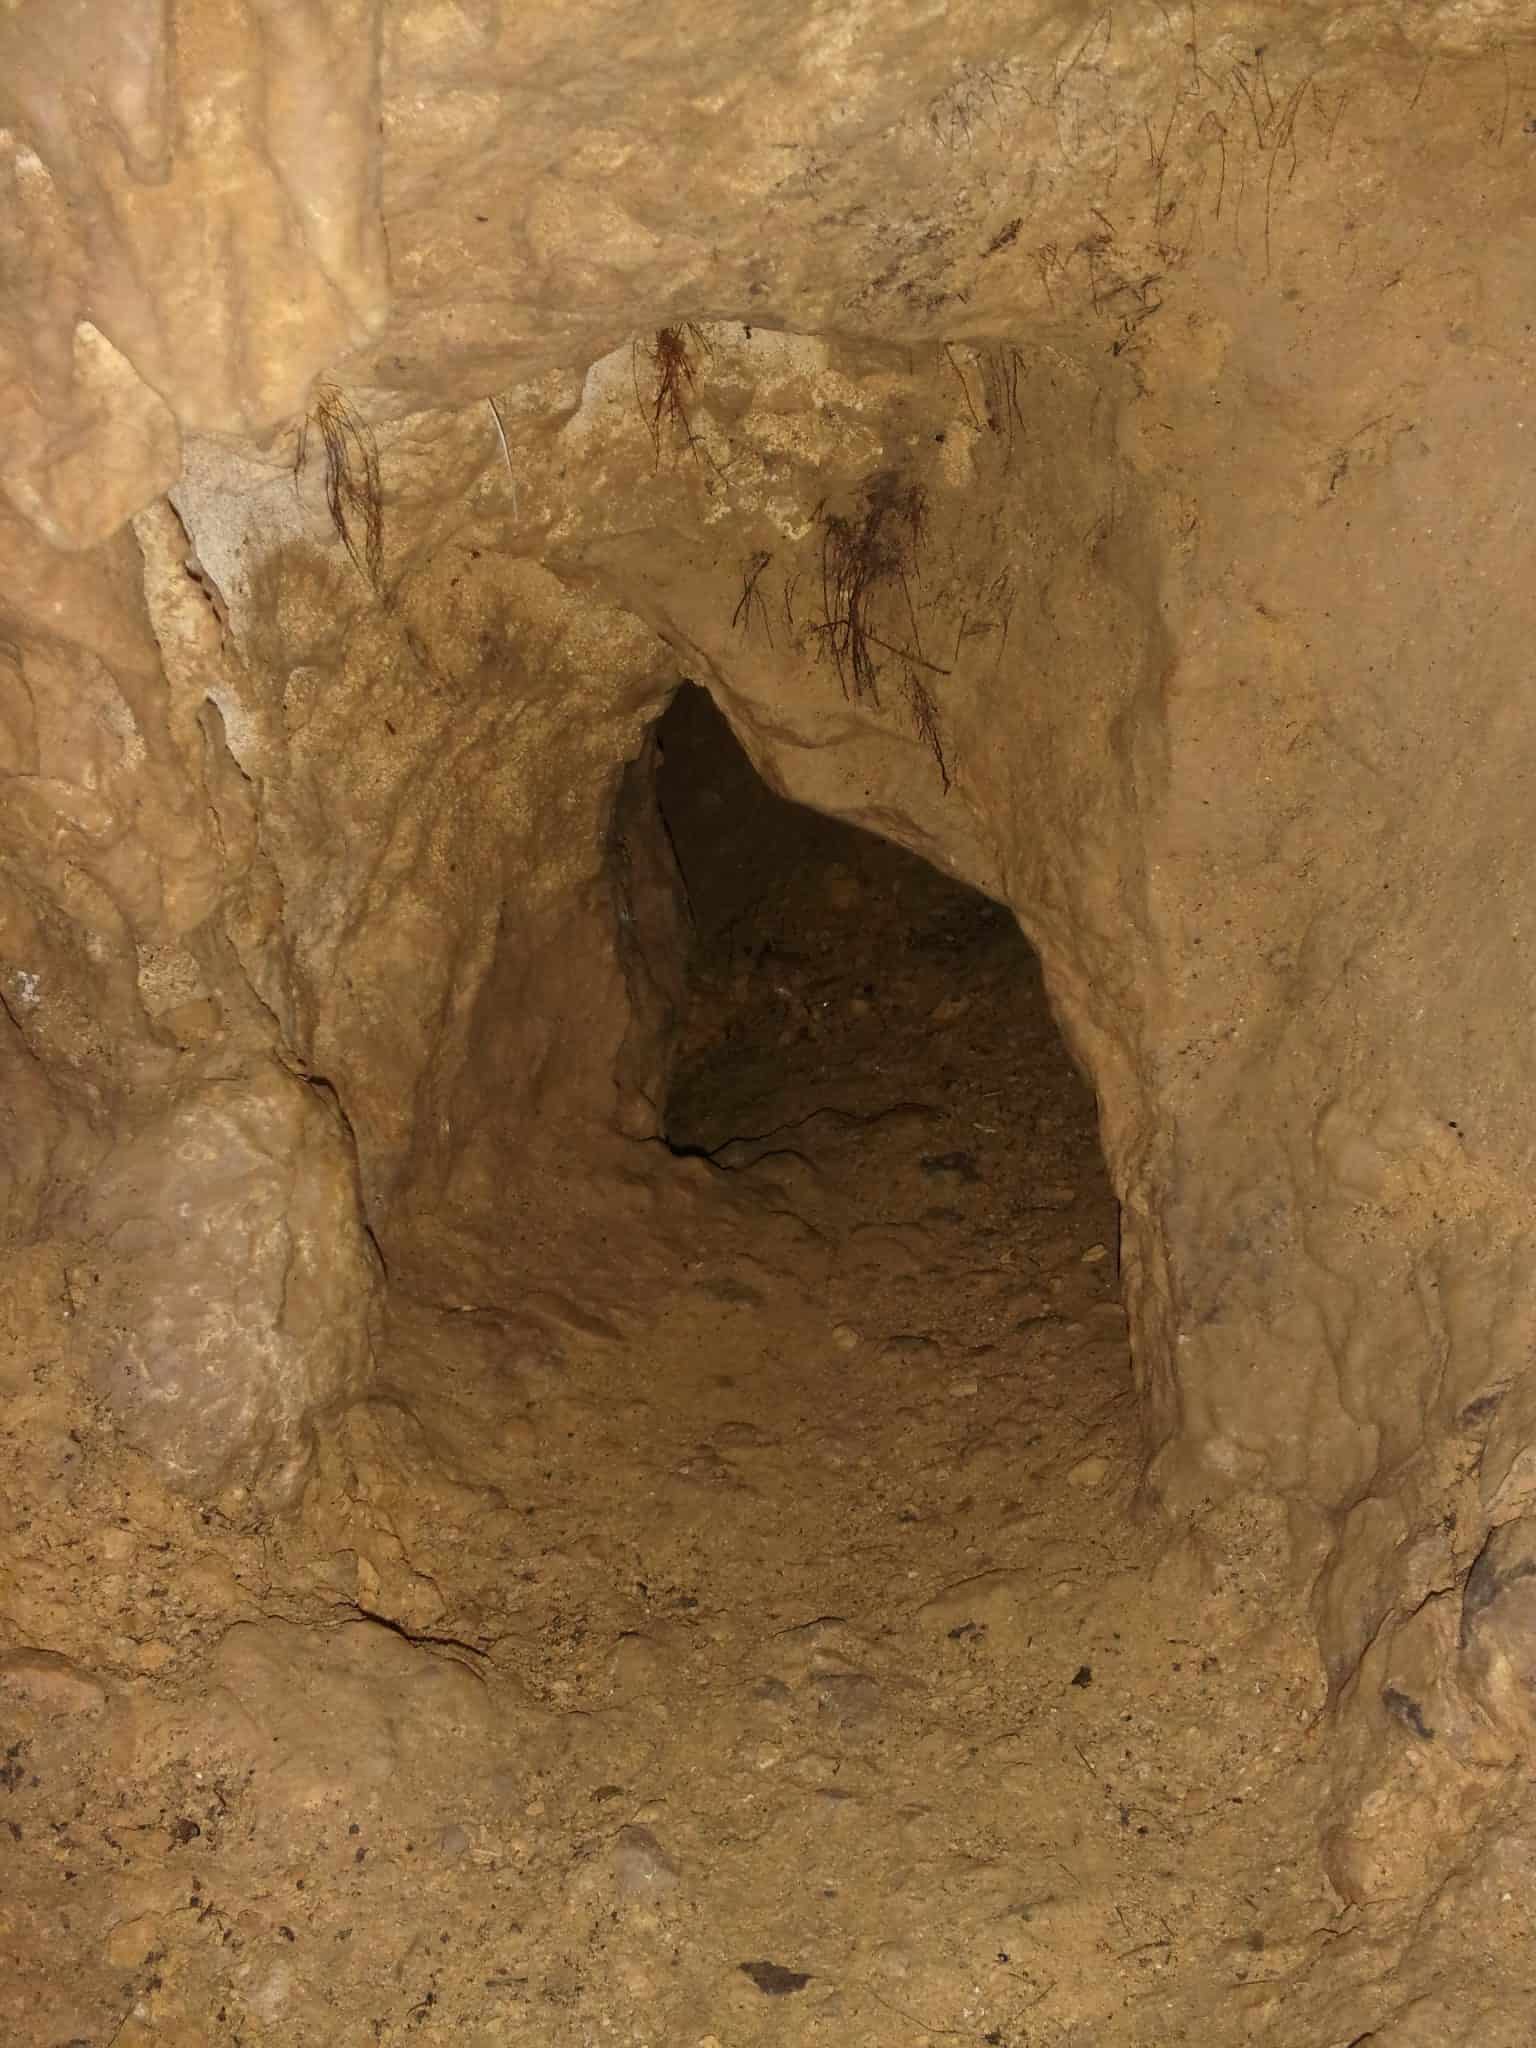 Grotte de Bugarach entrée